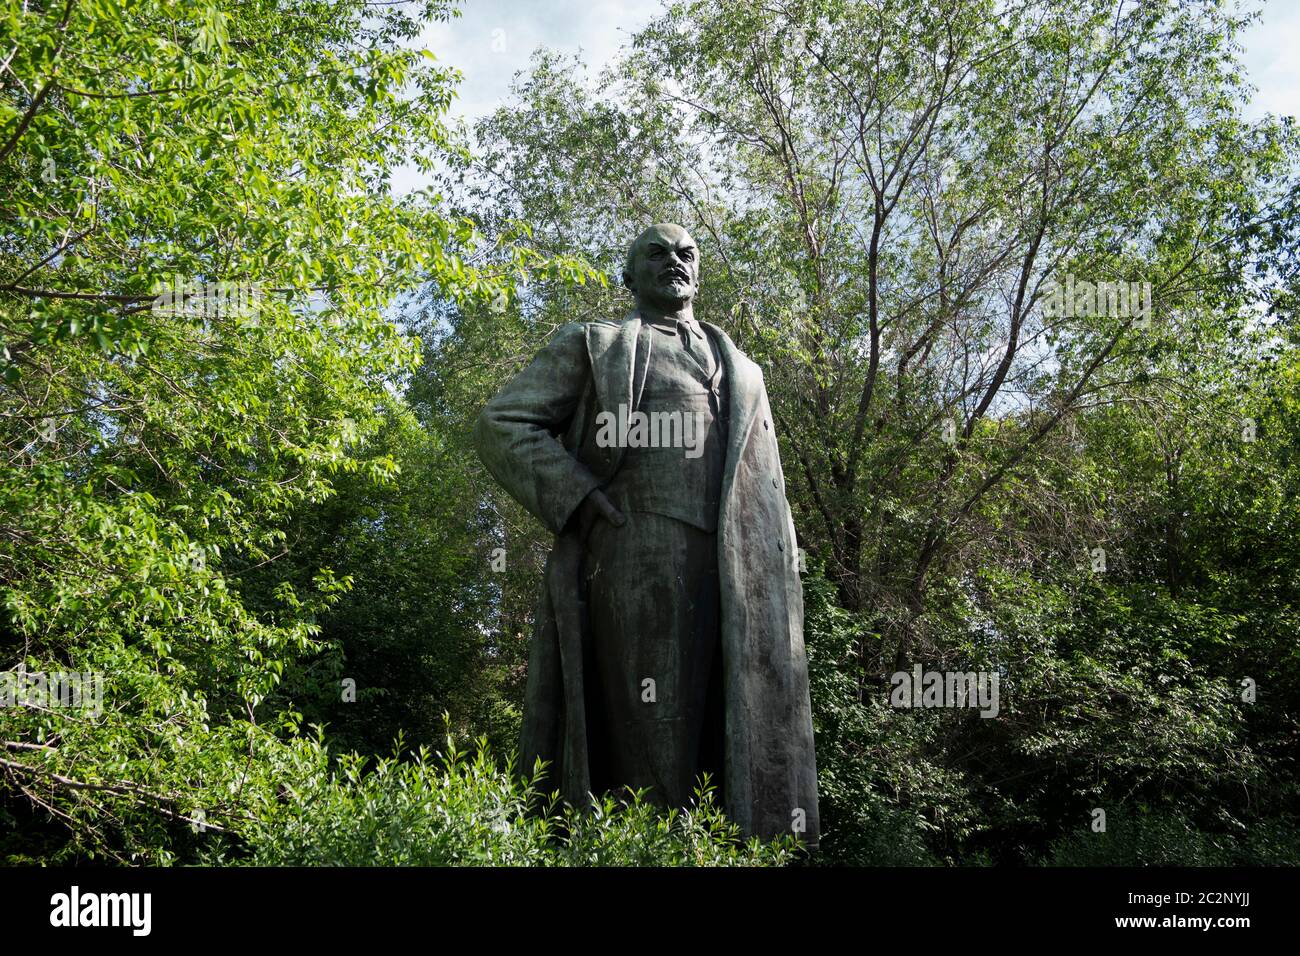 Kazakhstan, UST-Kamenogorsk - 21 mai 2020. Monument de Vladimir Lénine dans le parc. Sculpteur: Y.Vuchetich. 1958. Banque D'Images